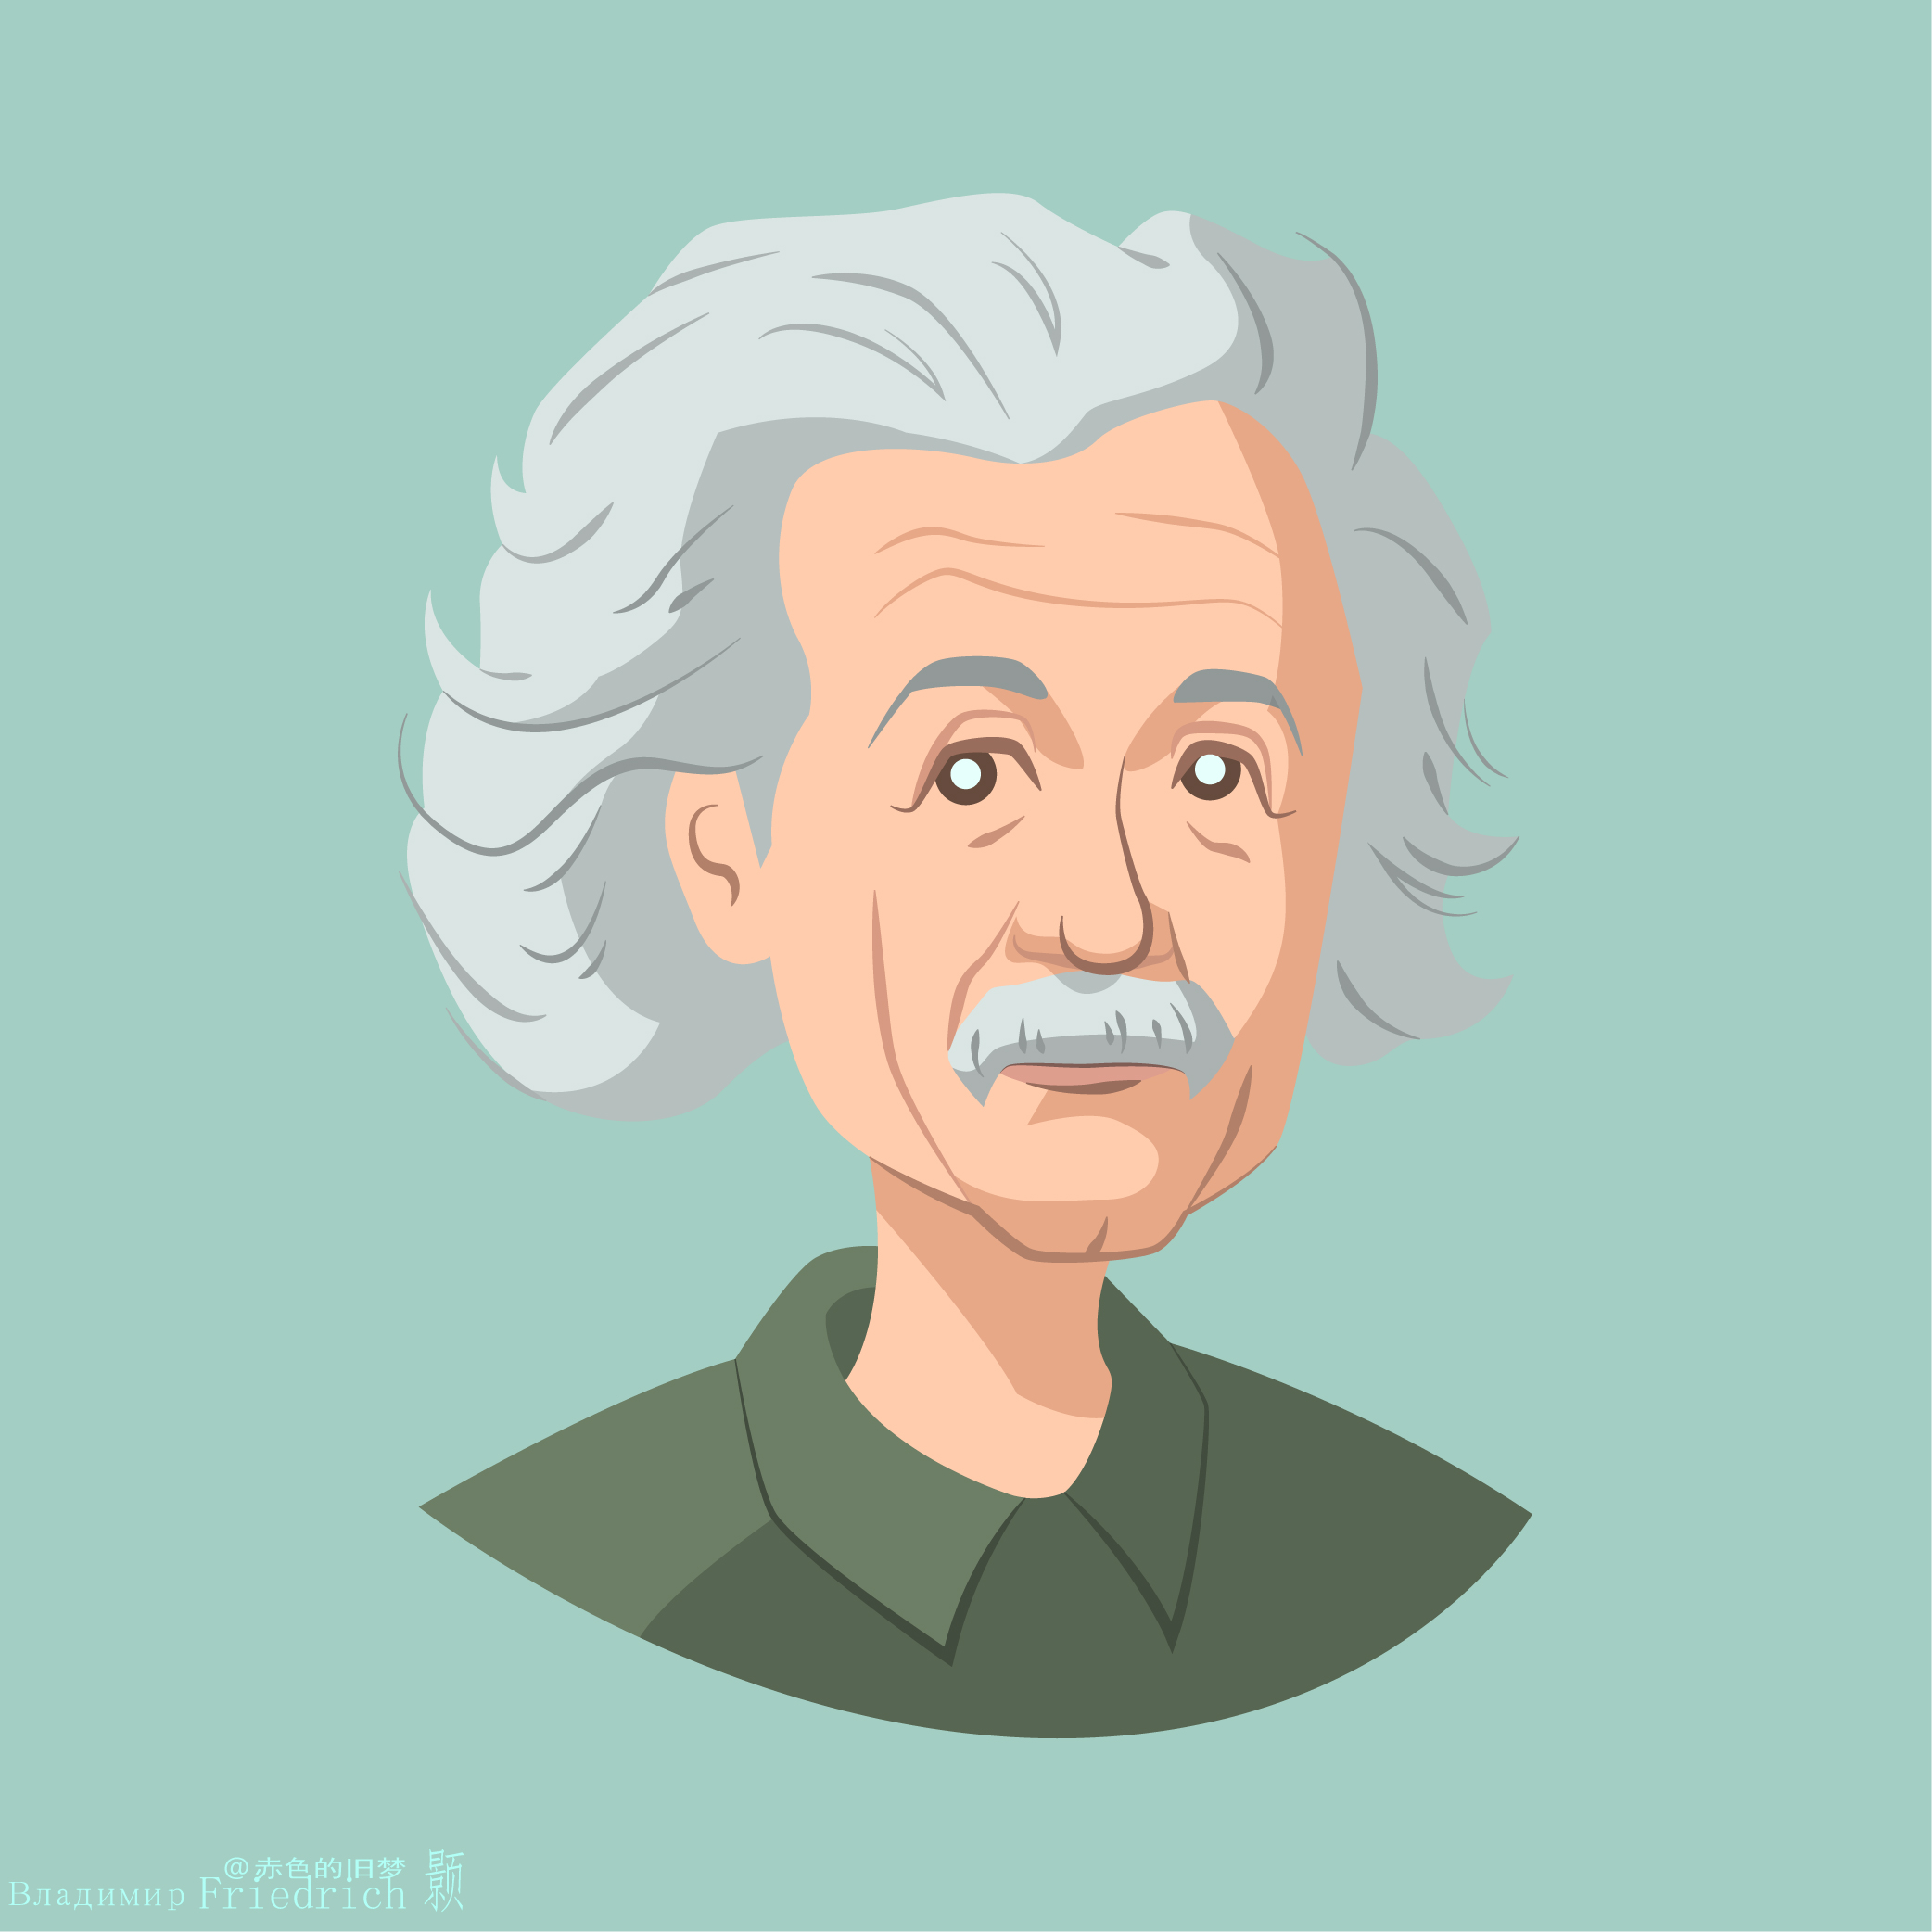 Flatdesign Albert Einstein Scientists Minimalism Simple Background 2084x2084